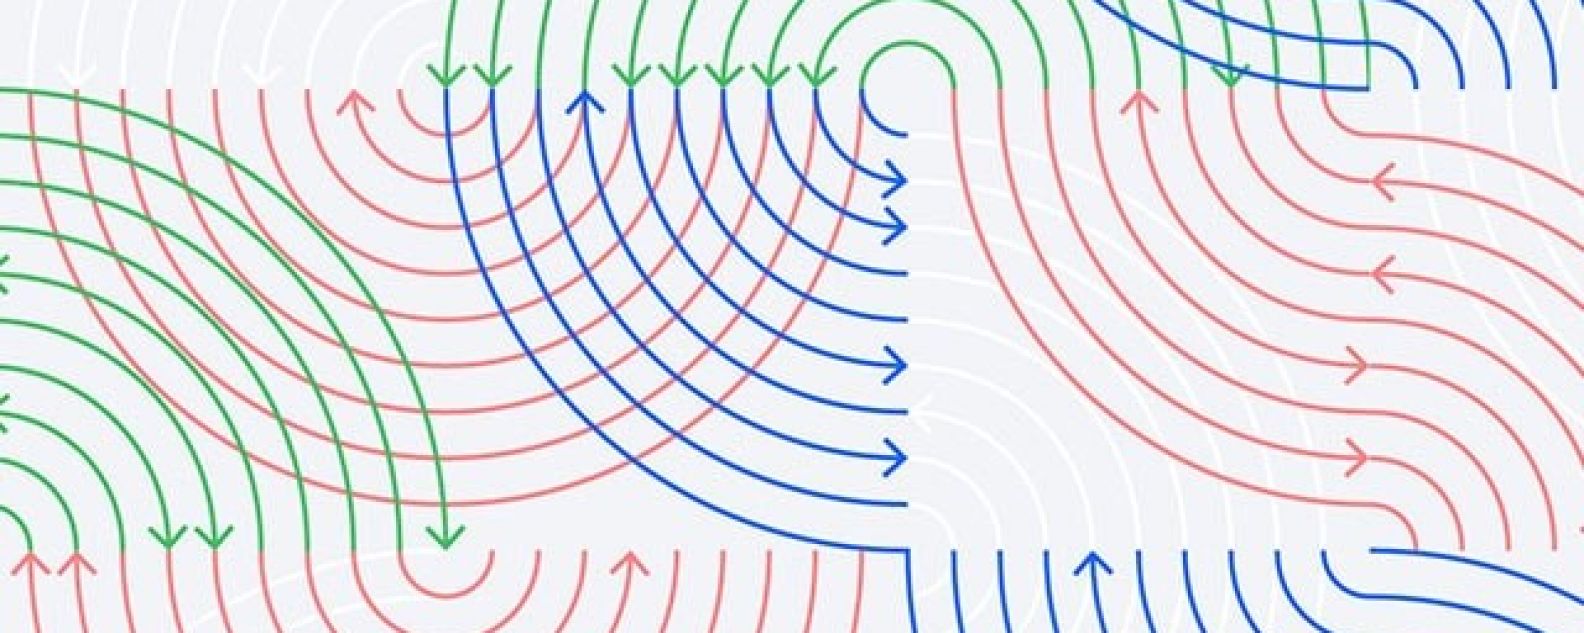 기하학적 화살표 선의 추상적인 패턴